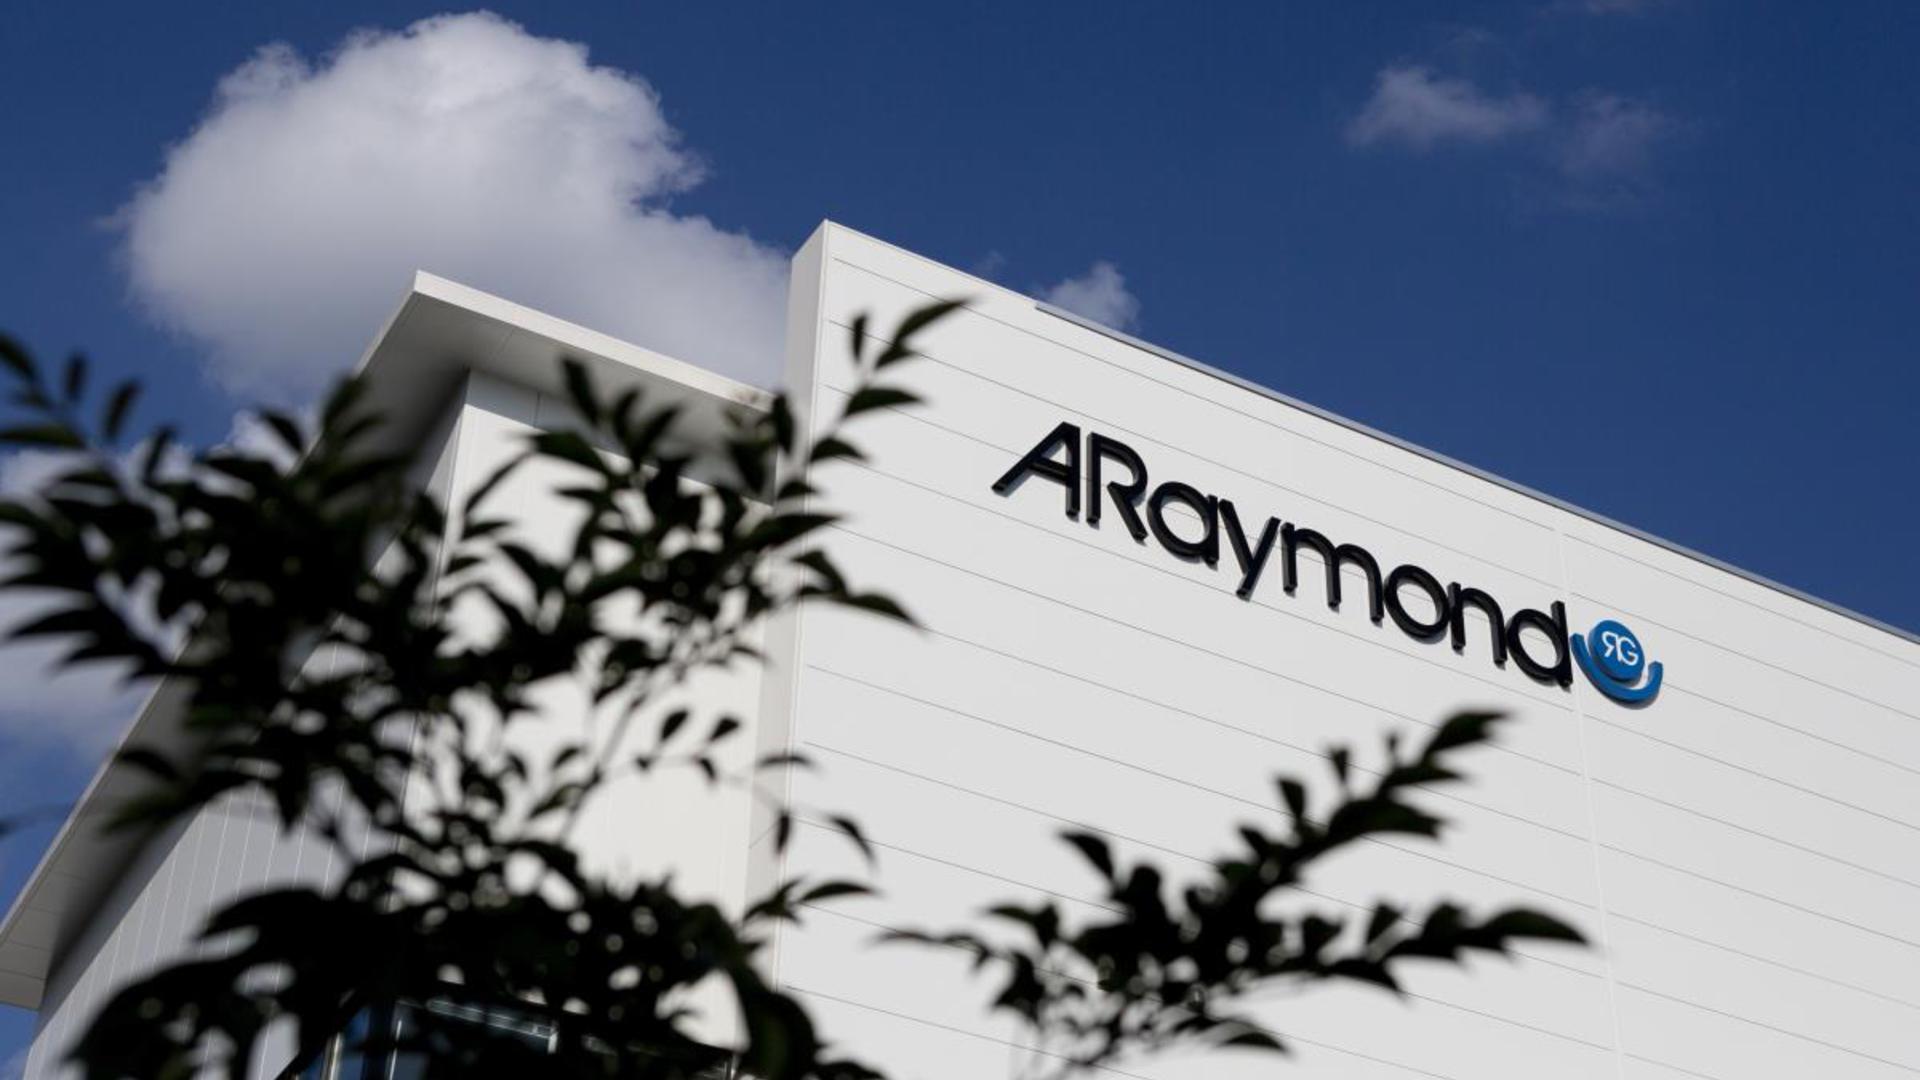 ARaymond engage trois millions d'euros dans une usine de fixations